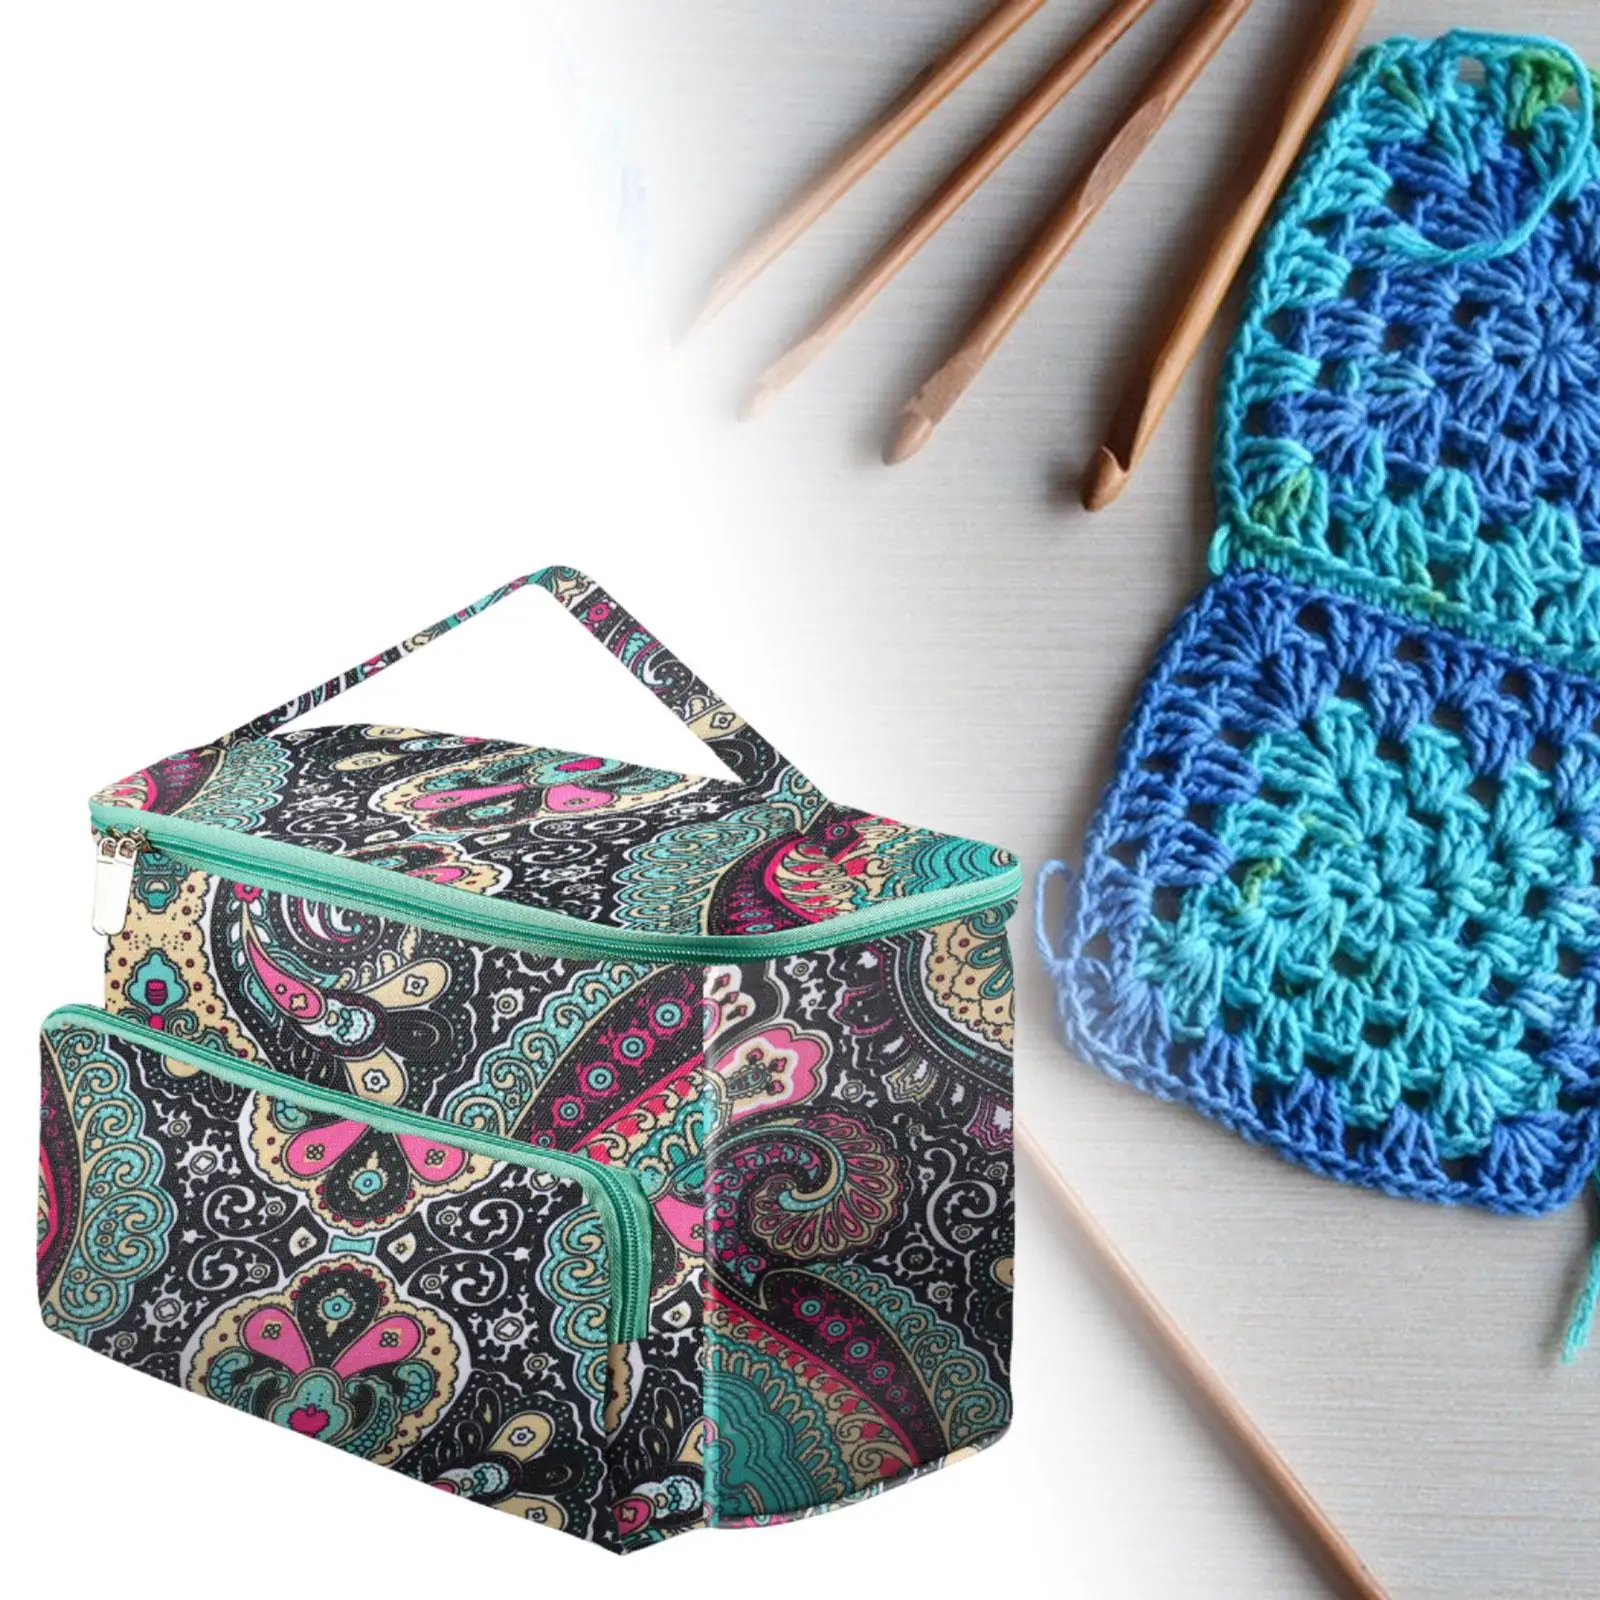 Yarn Storage Tote Bag Knitting Crochet Supplies Waterproof Skeins Large Capacity Crochet Bag Yarn Storage Bag Yarn Storage Bag